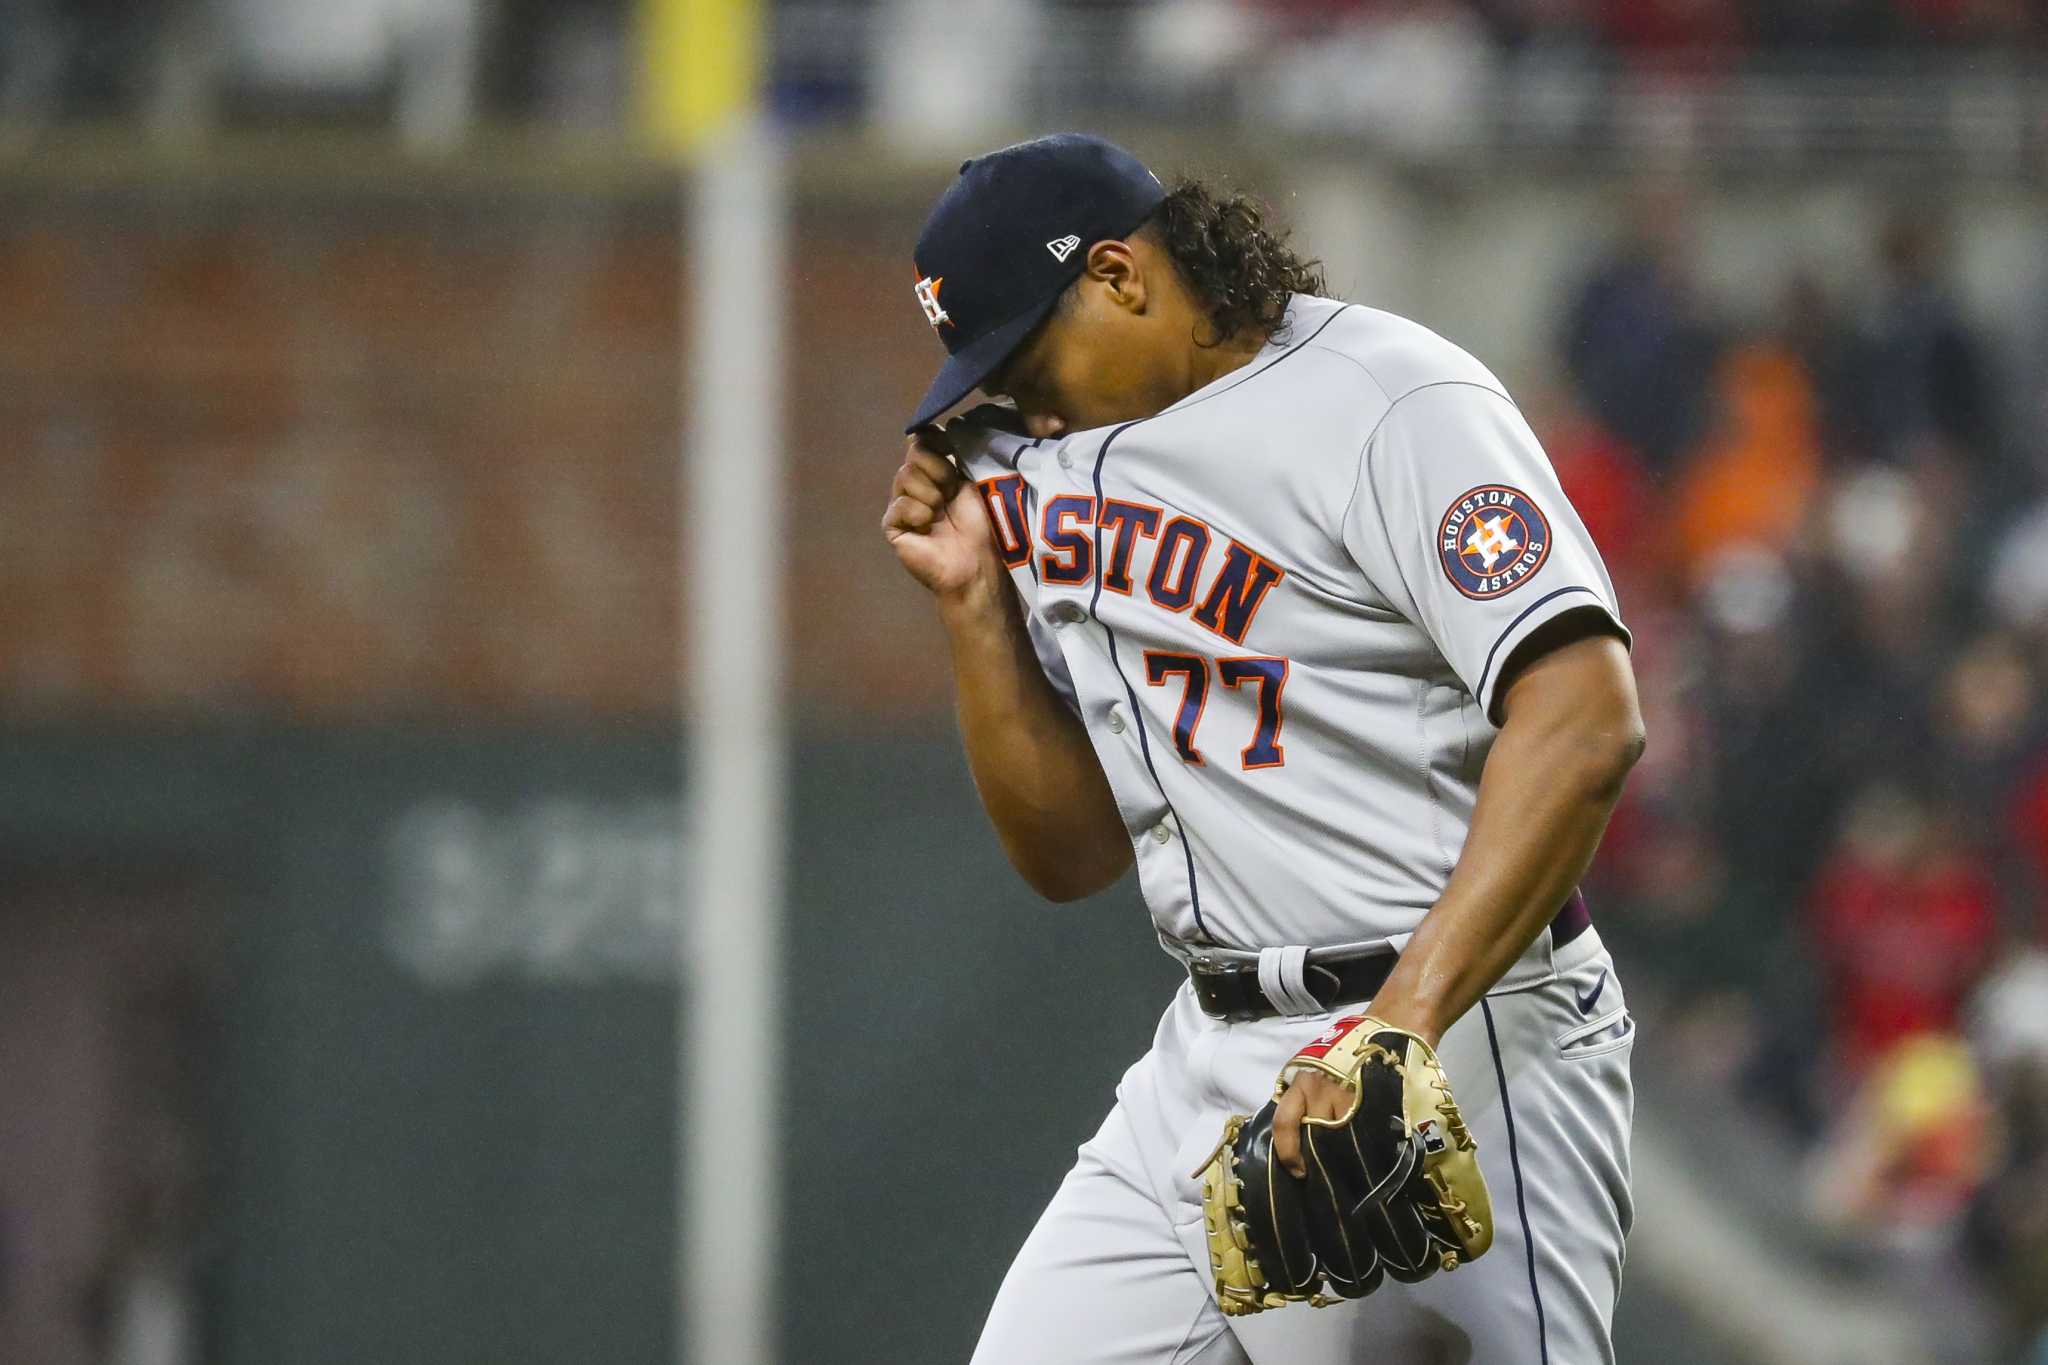 World Series: Ranger Suárez shut down the Astros in Game 3